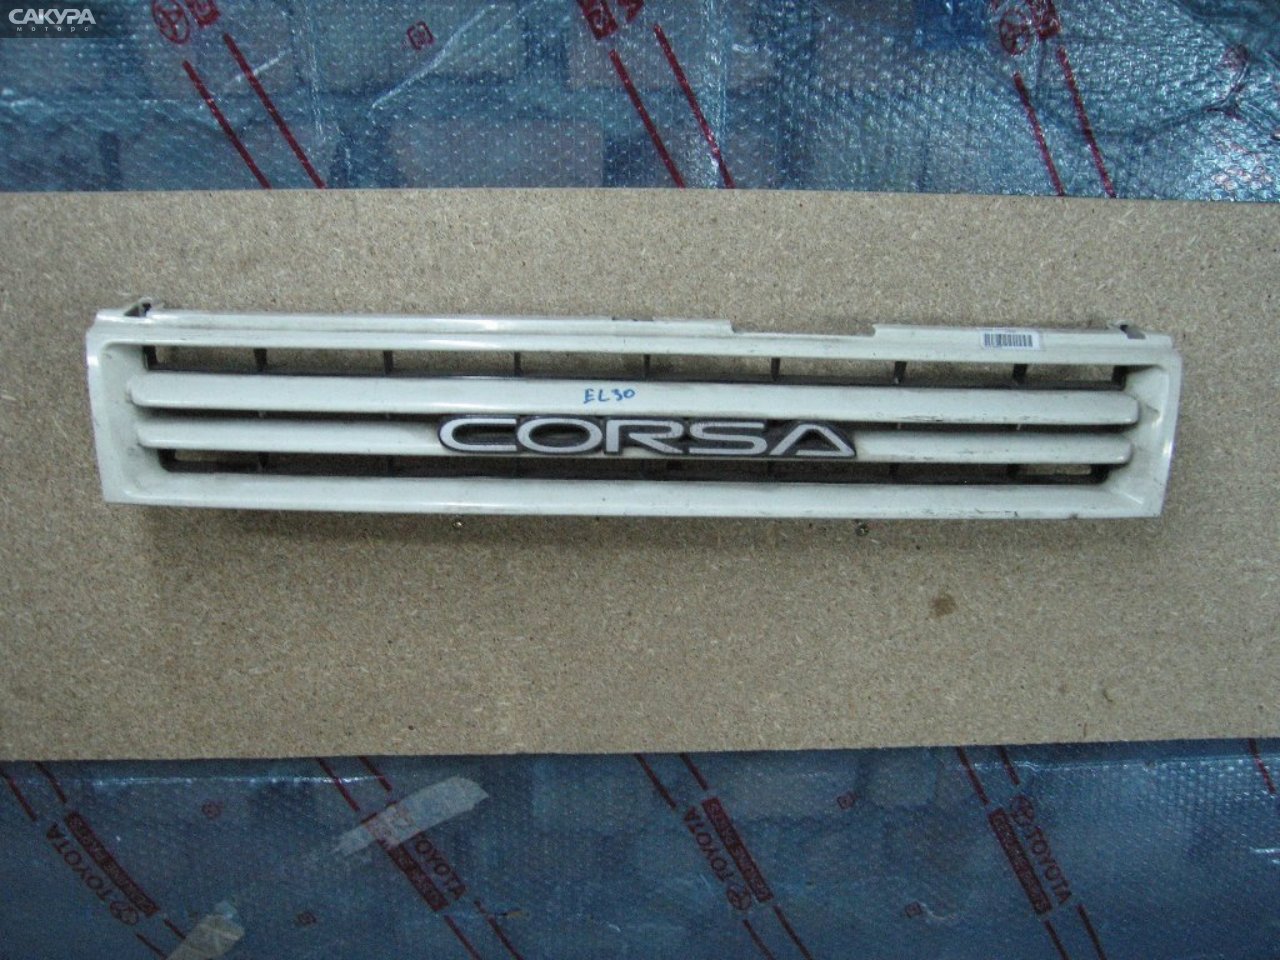 Решетка радиатора Toyota Corsa EL30: купить в Сакура Абакан.